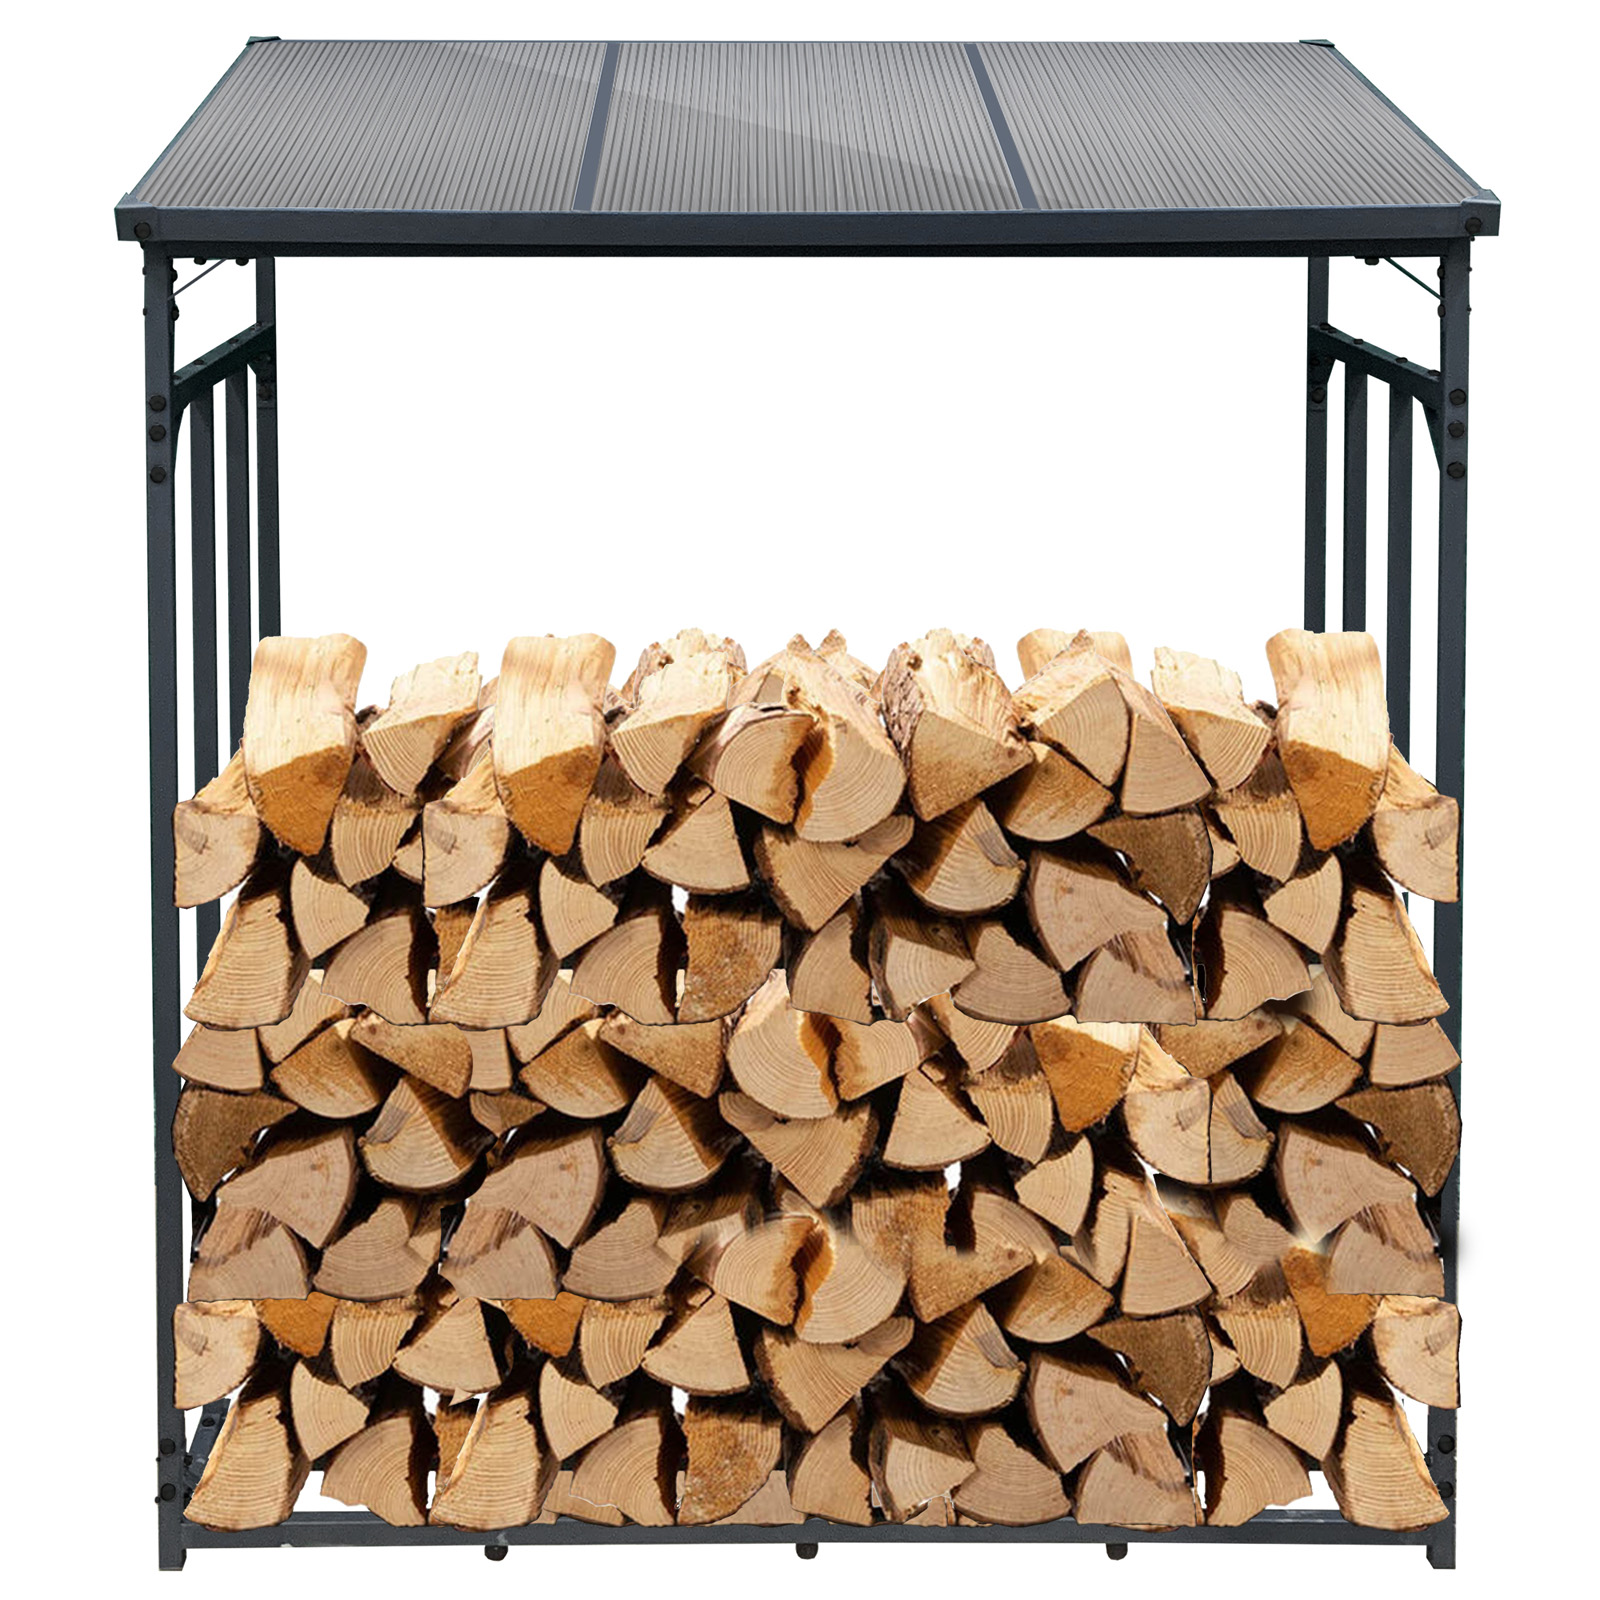 Range-bûches étagère en acier inoxydable bois de cheminée